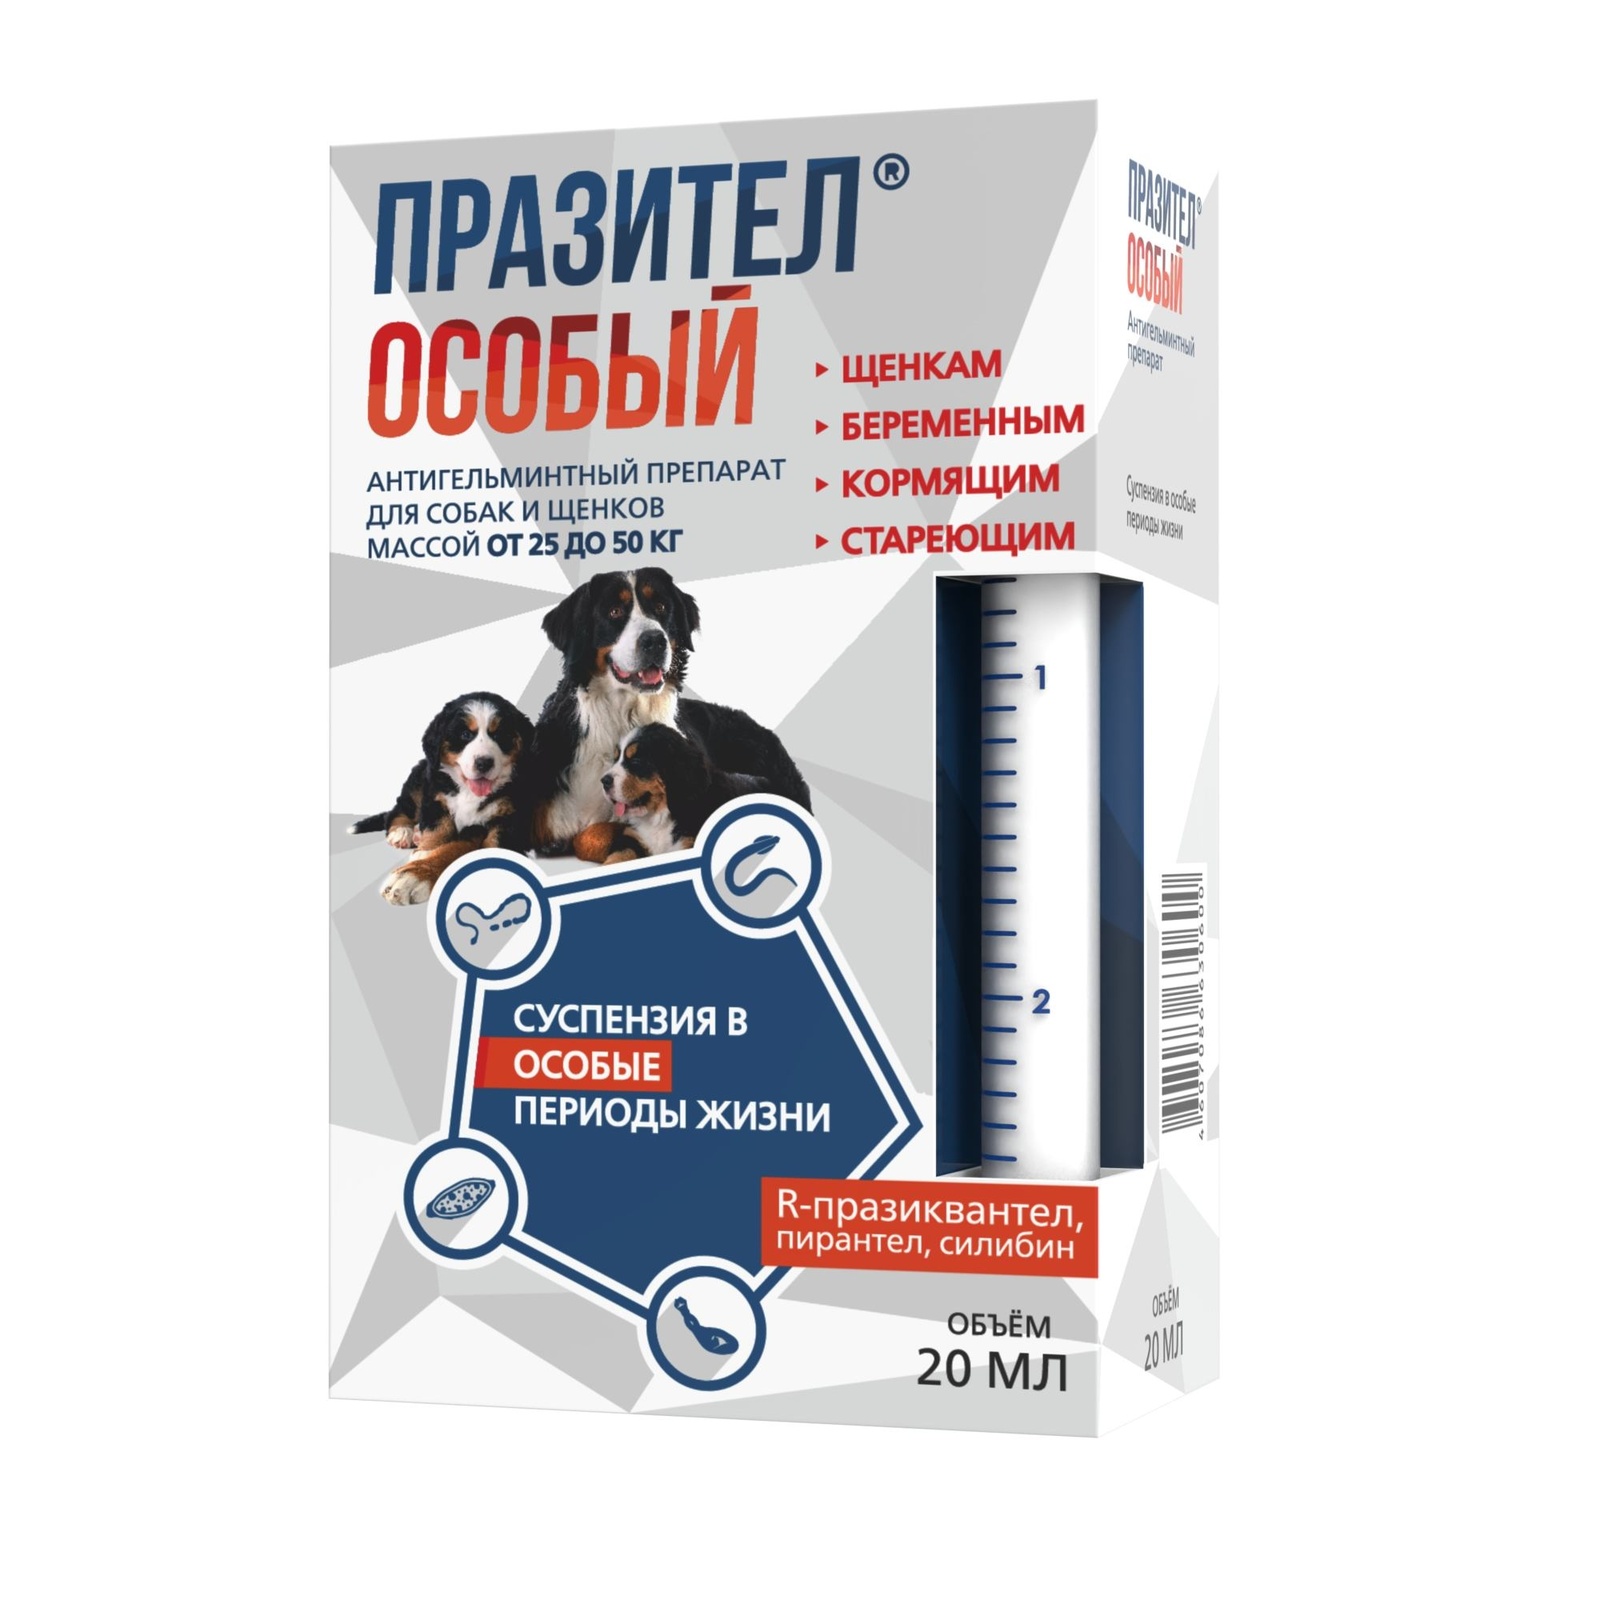 Астрафарм Астрафарм празител Особый антигельминтный препарат для собак и щенков массой от 25 до 50 кг (96 г)